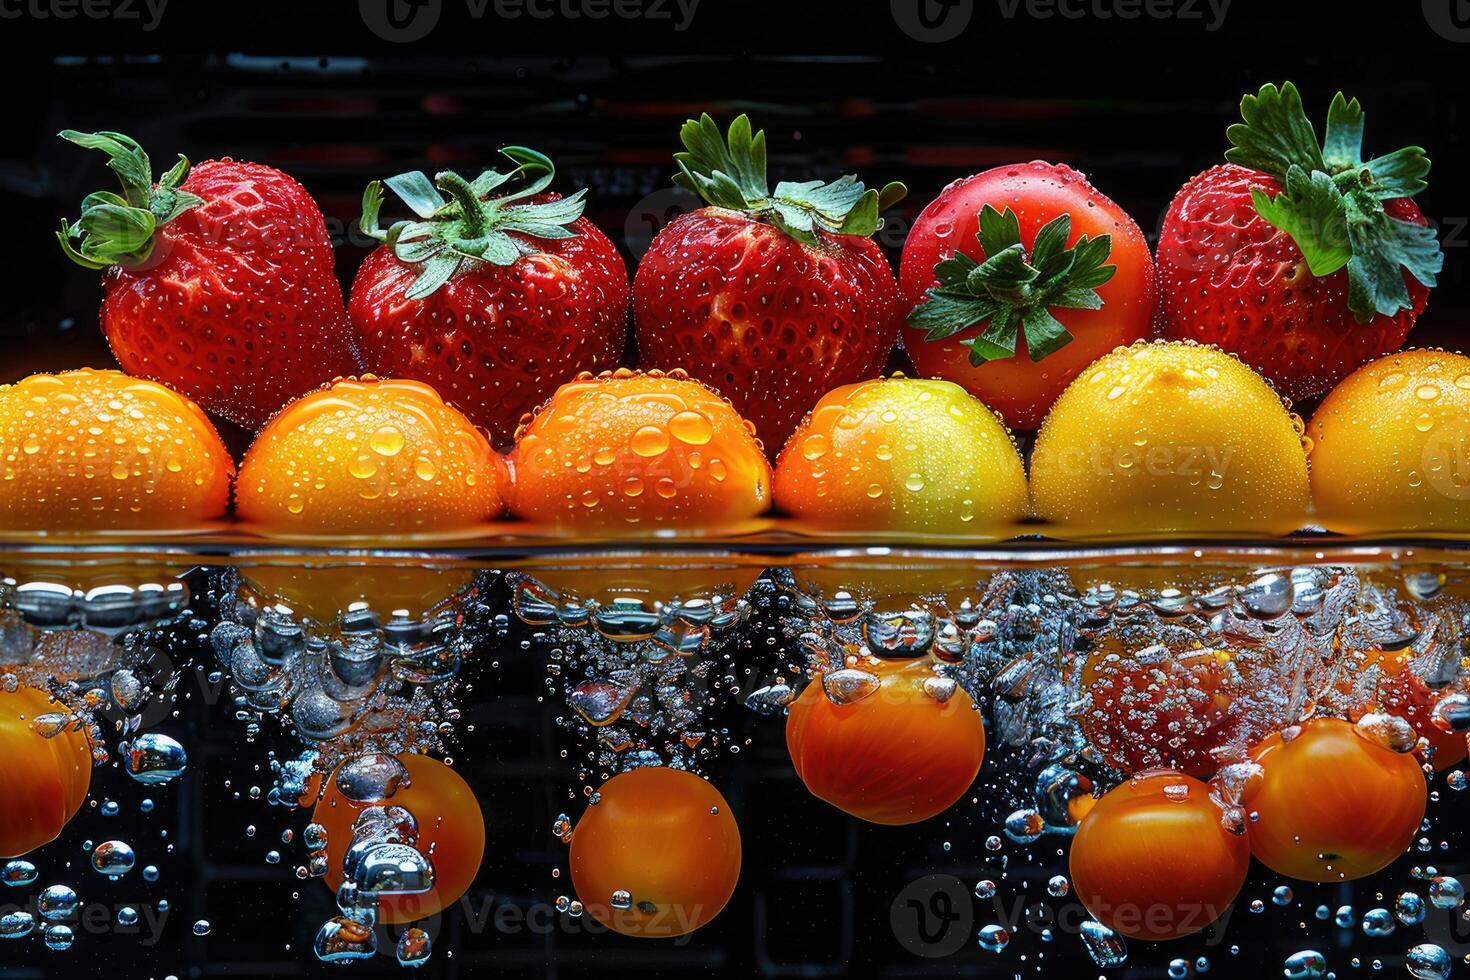 ein frisch Früchte oder Gemüse mit Wasser Tröpfchen Erstellen ein Spritzen Werbung Essen Fotografie foto